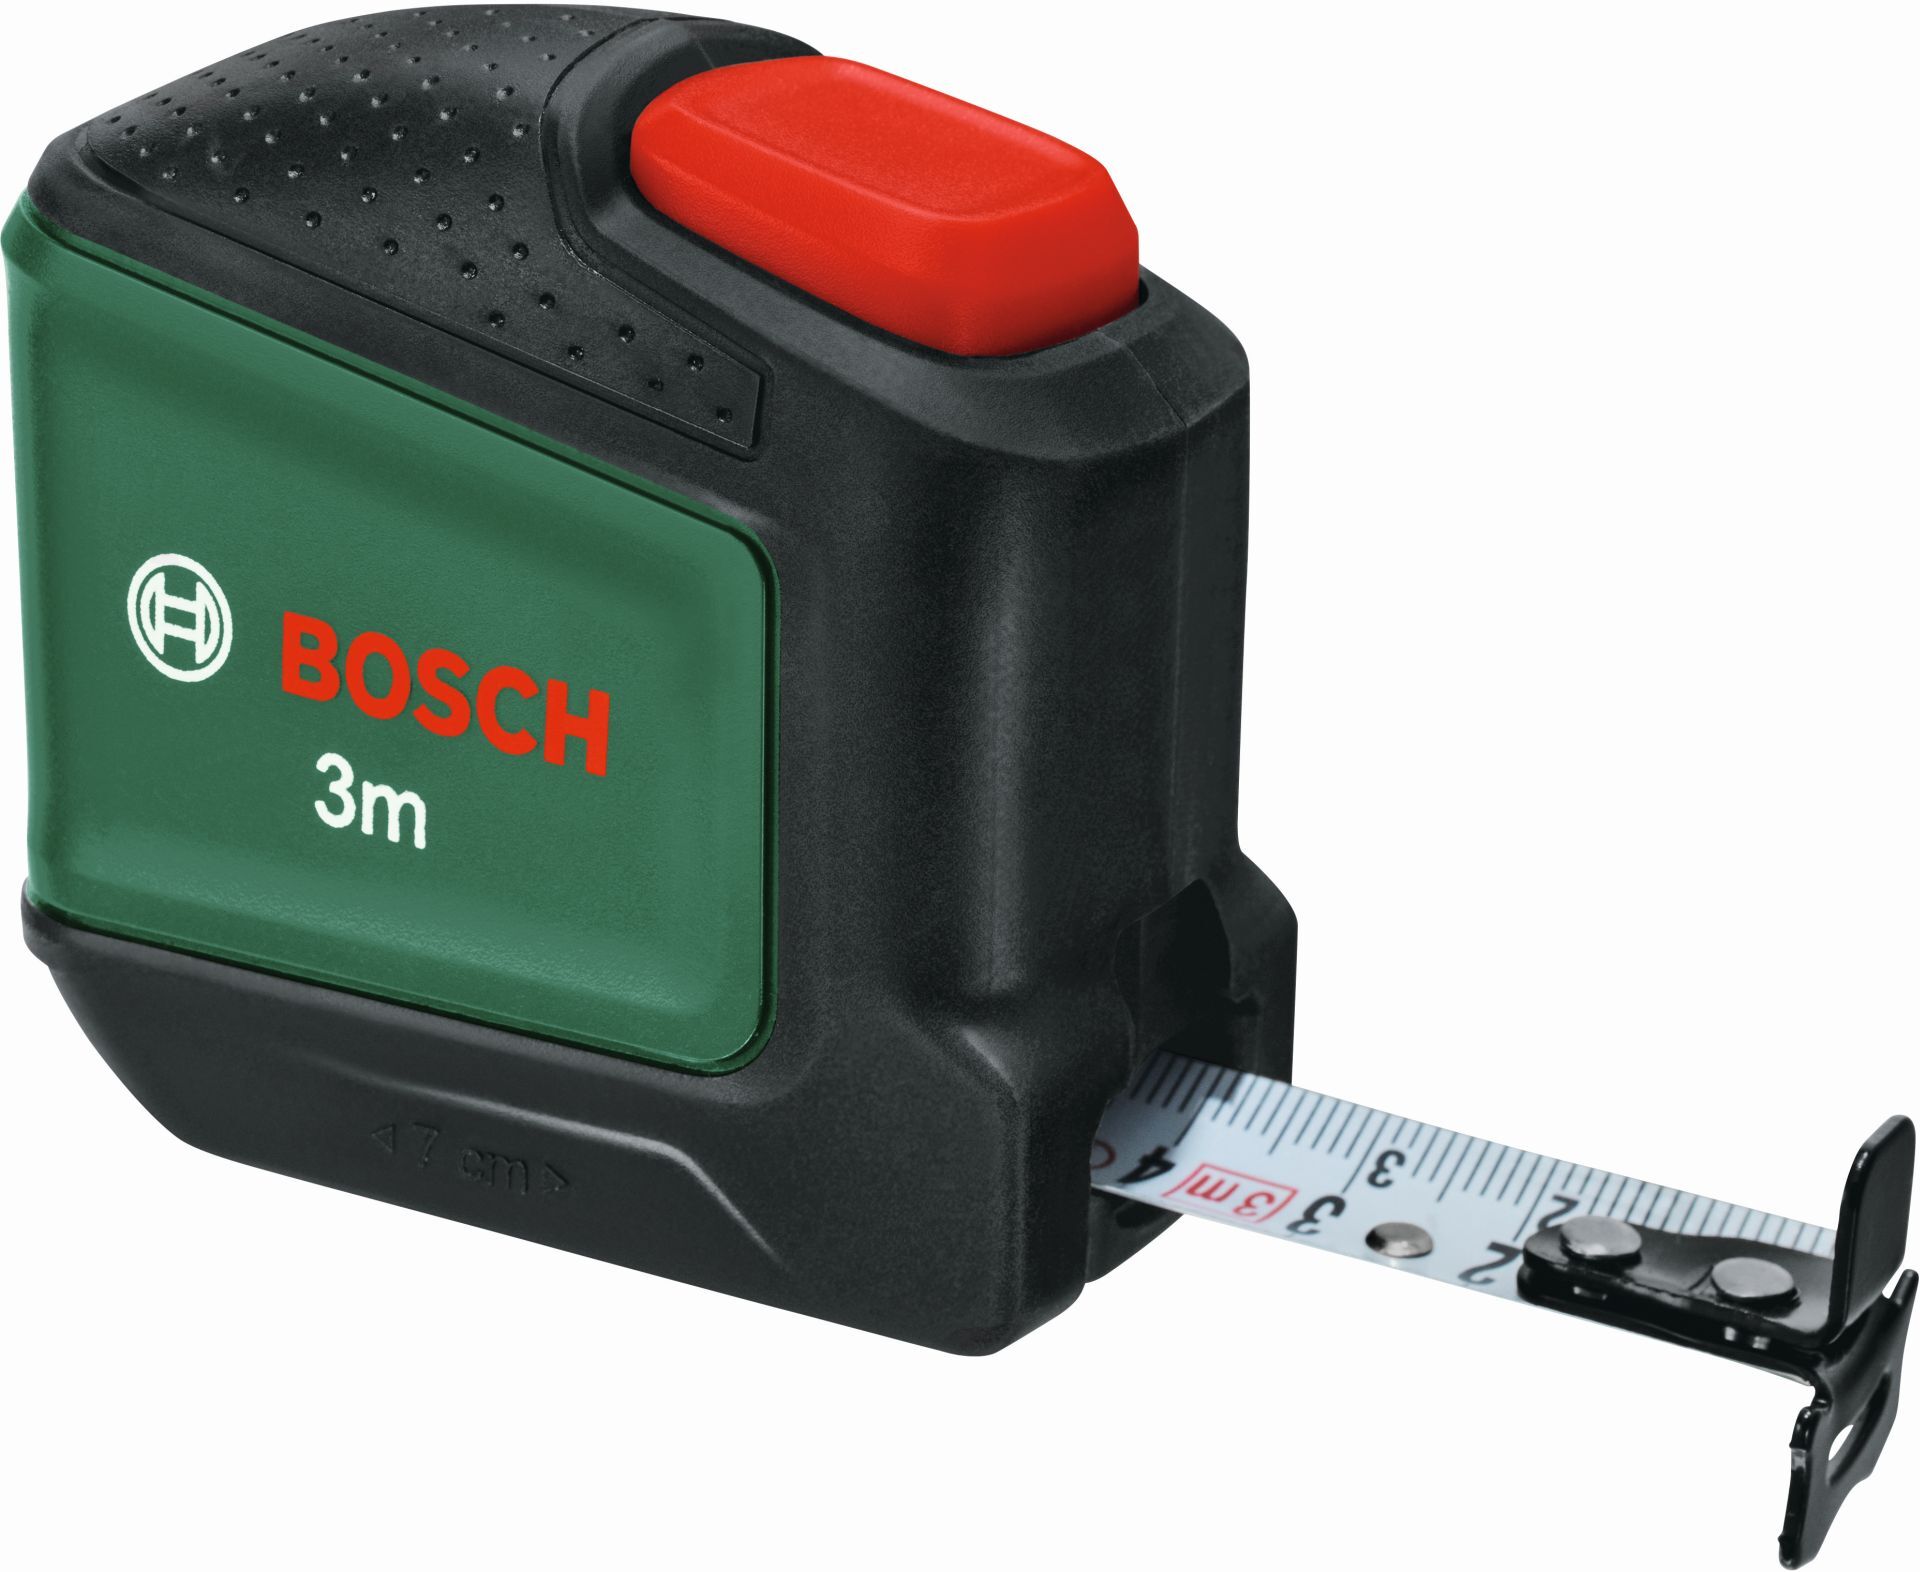 Bosch Metre ruban 3 m 1600A027PJ